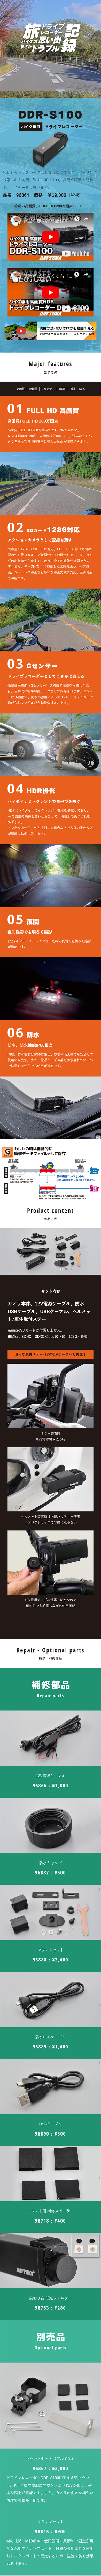 バイク専用ドライブレコーダー DDR-S100_sp_1